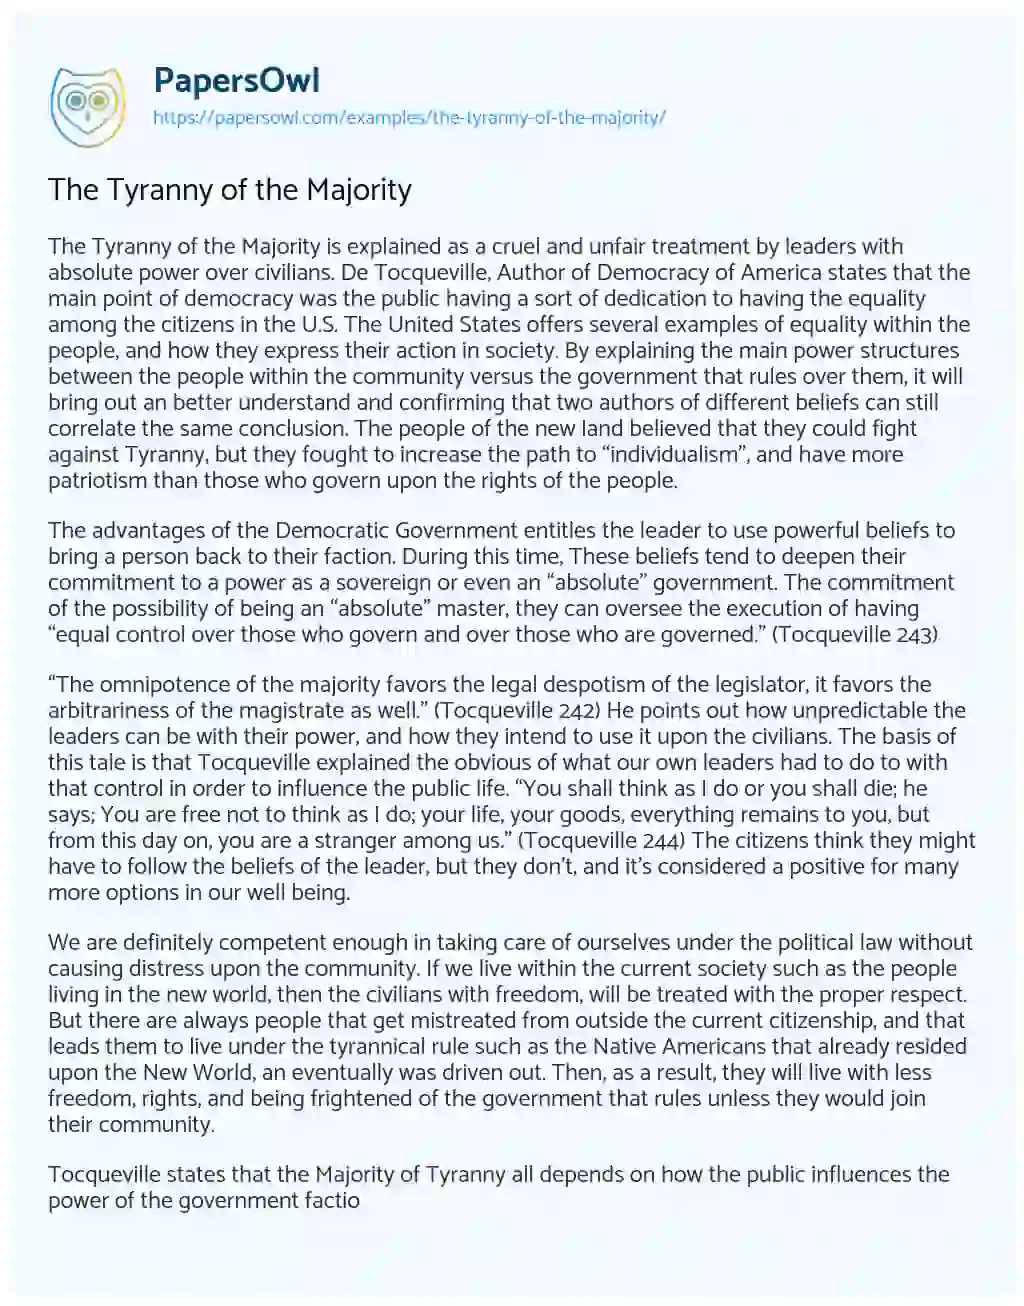 The Tyranny of the Majority essay